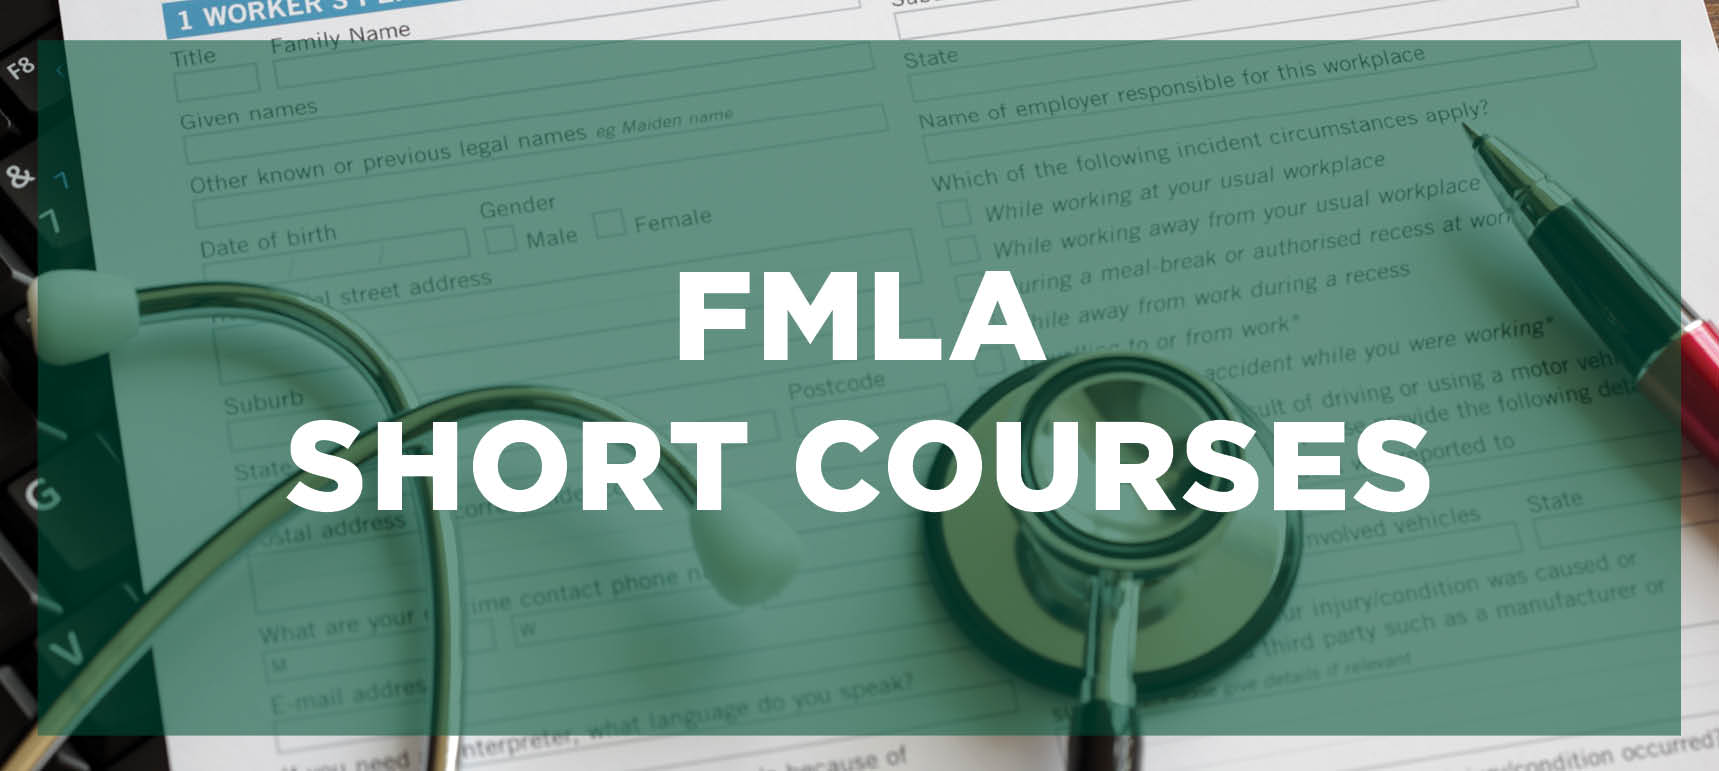 FMLA Short Courses